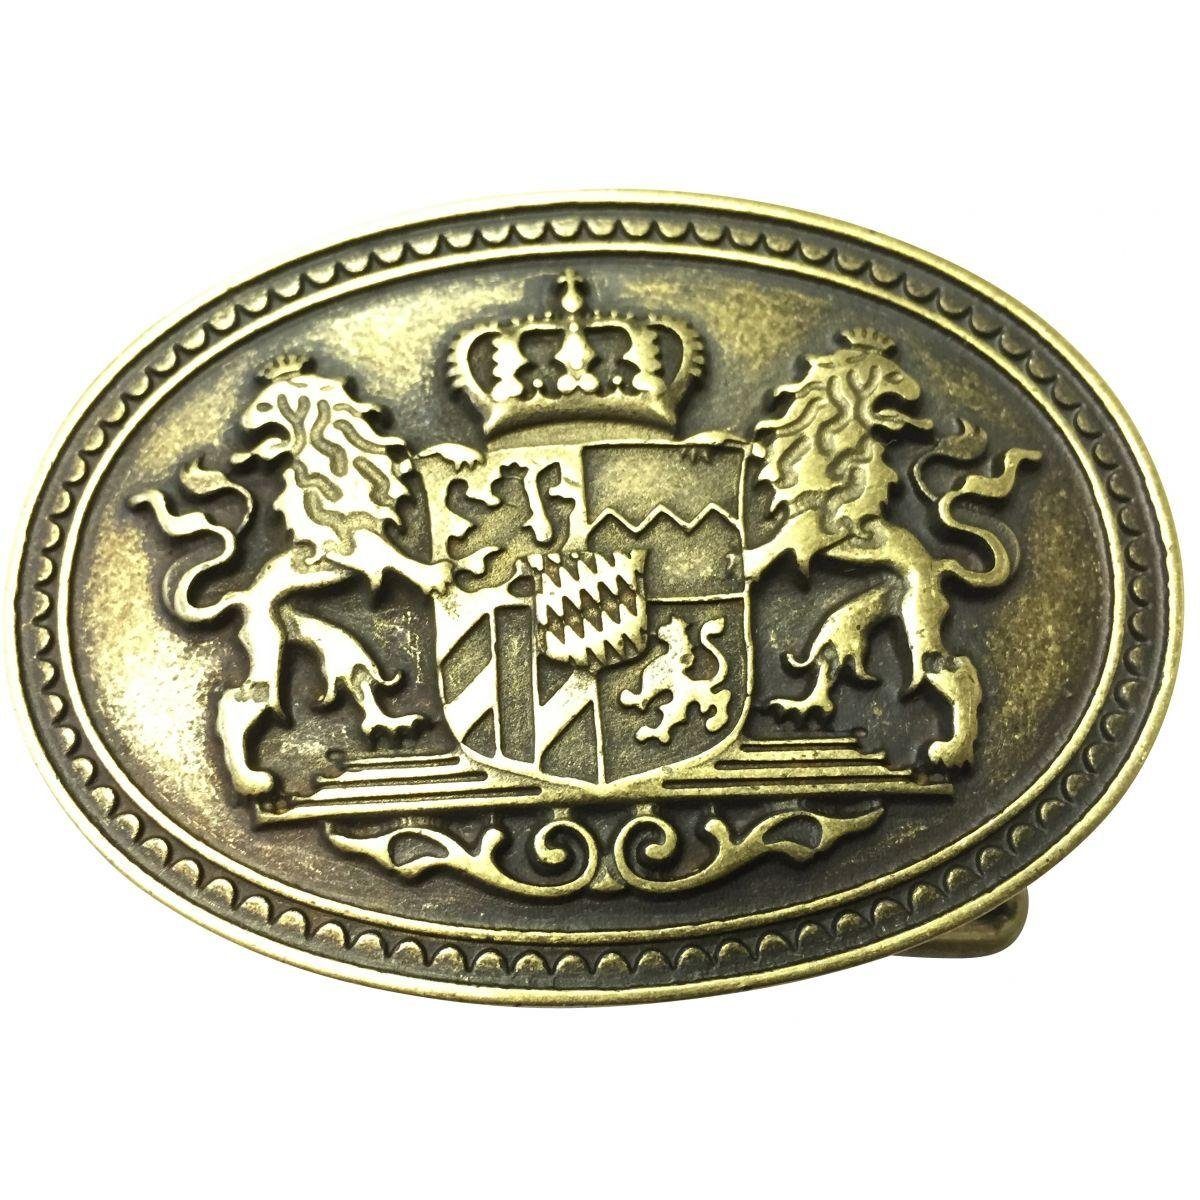 BELTINGER Gürtelschnalle Doppellöwe und Wappen 4,0 cm - Buckle Wechselschließe Gürtelschließe 4